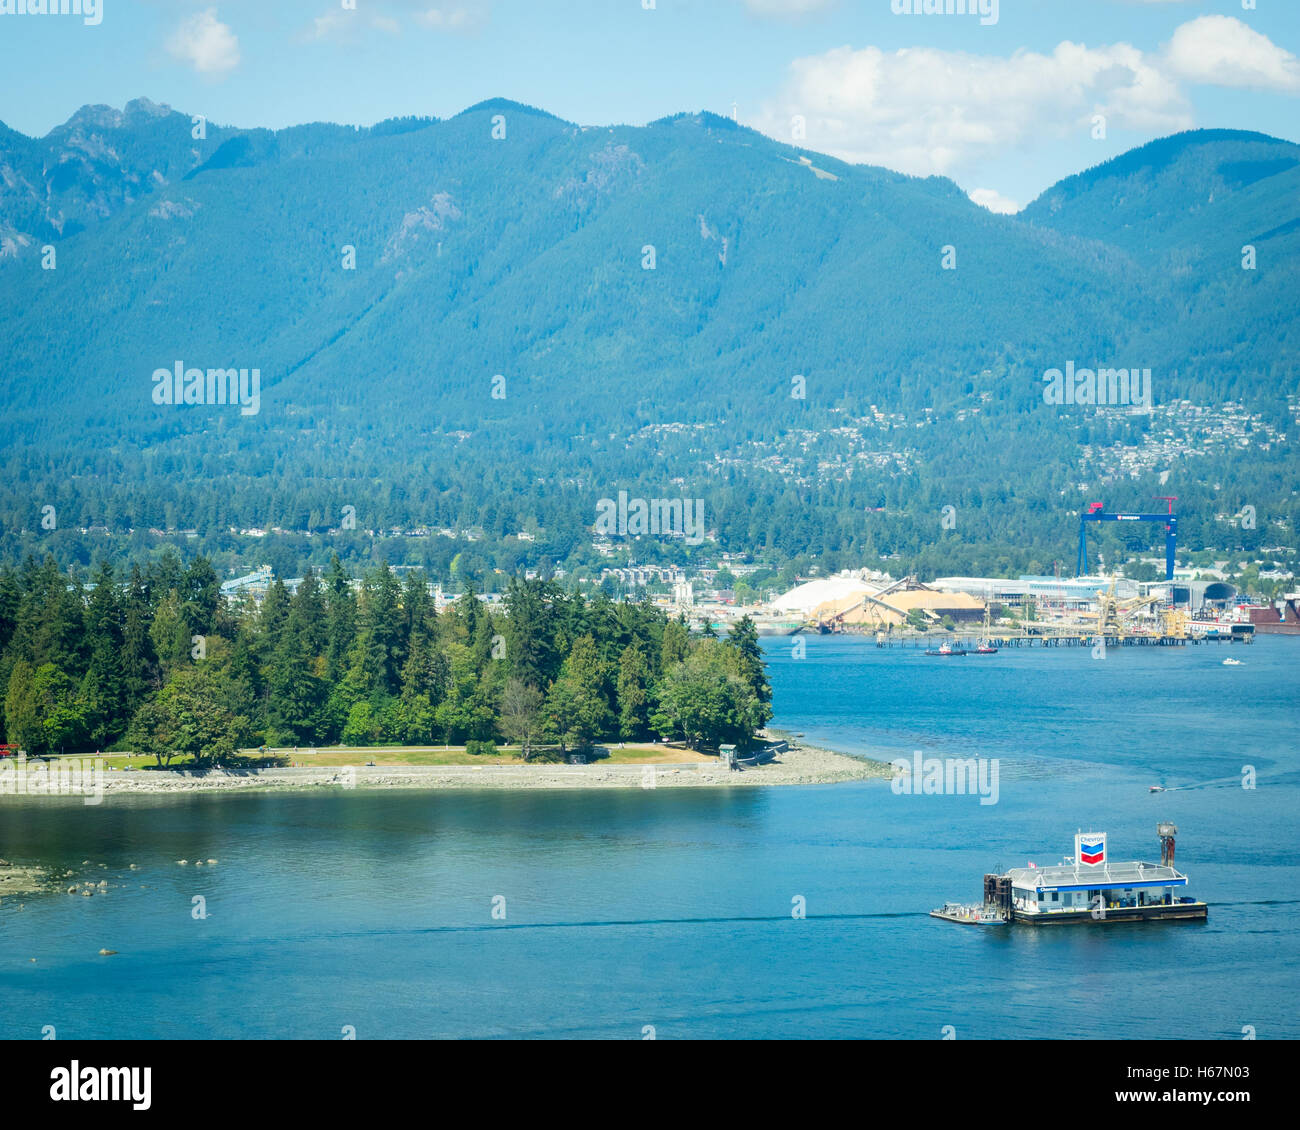 View : Coal Harbour, la station essence Chevron flottante, Stanley Park, Vancouver Harbour, et la montagne Grouse. Vancouver. Banque D'Images